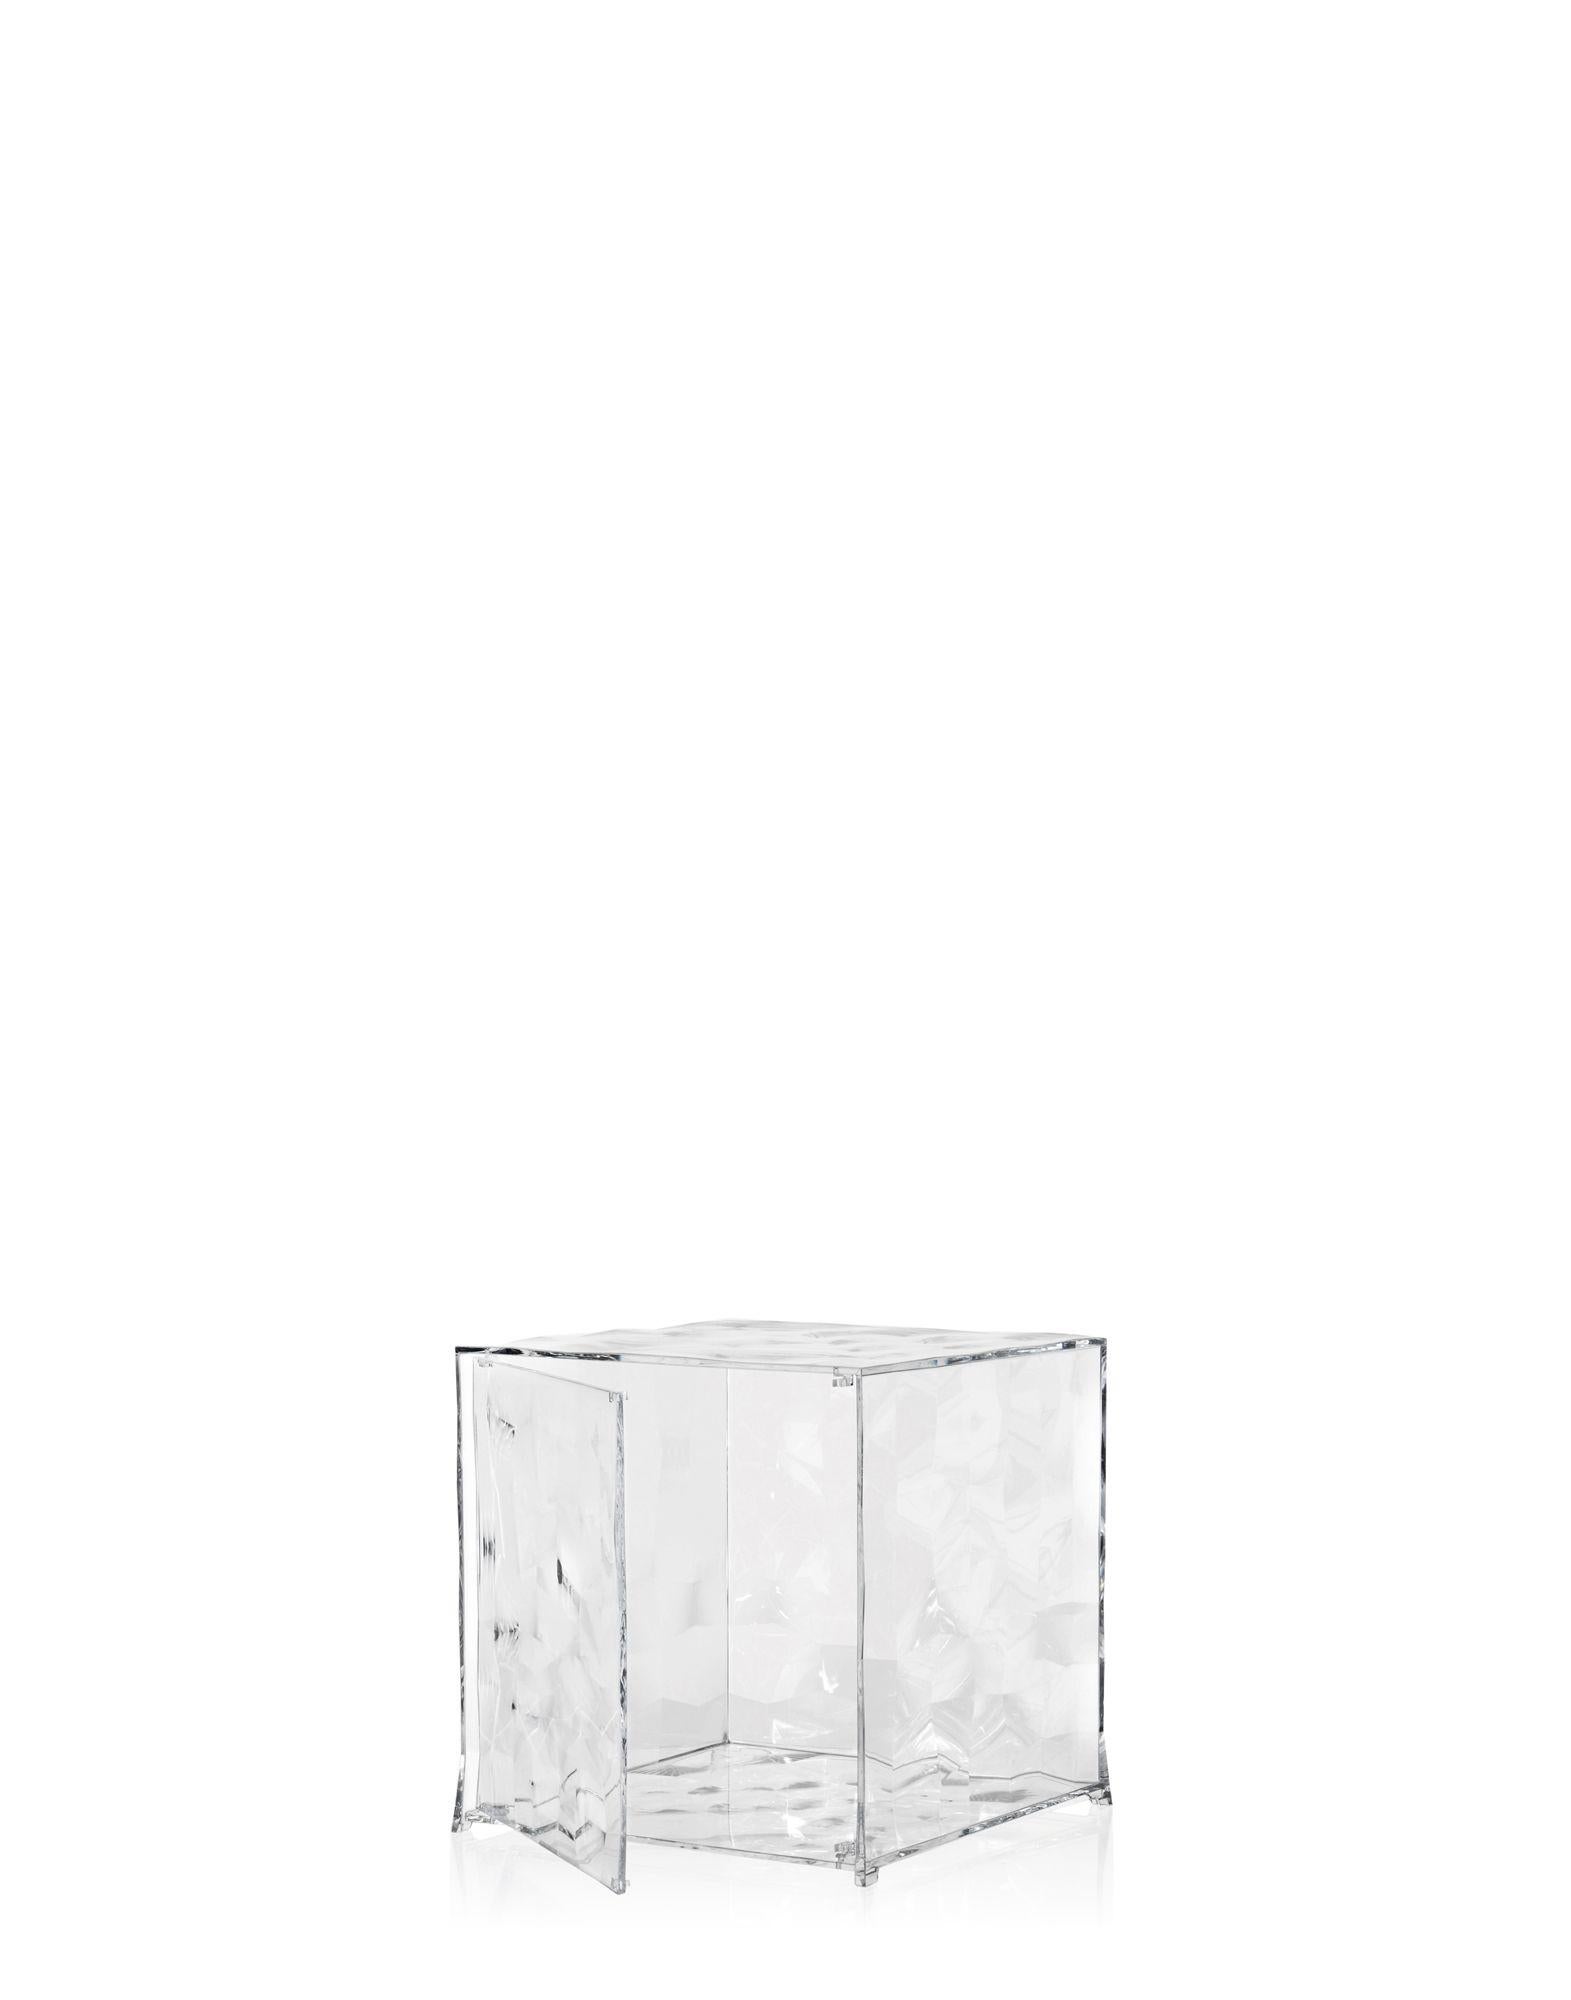 Optic est un cube conteneur qui existe en deux versions : fermé avec une porte ou avec un côté ouvert. Sa surface est décorée de manière frappante par des pyramides transparentes ou miroitantes à base carrée, légèrement en relief, qui créent un fort